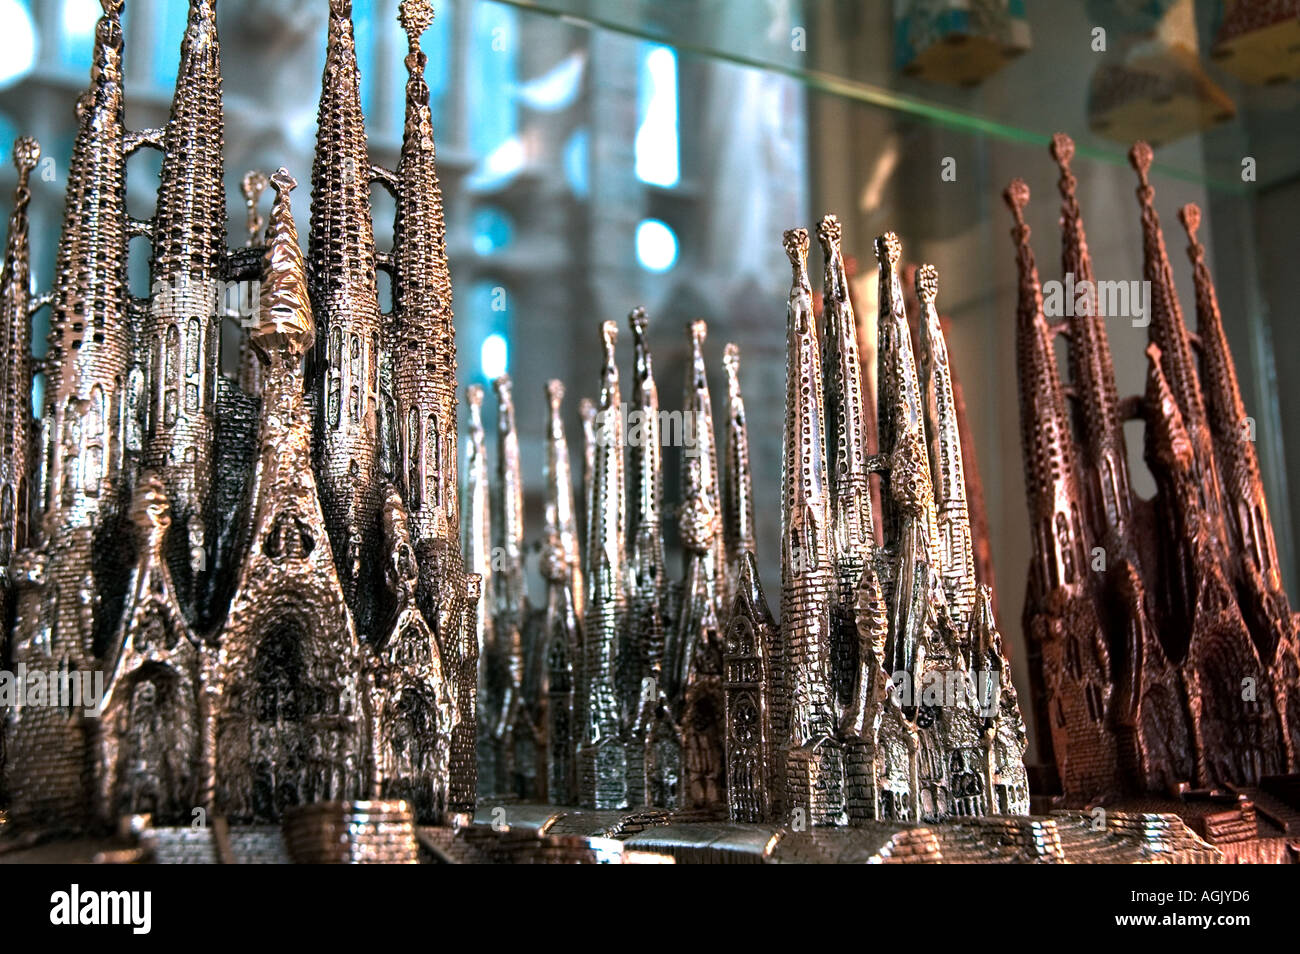 Des répliques miniatures de la Sagrada Familia Temple dans un magasin de souvenirs à Barcelone Espagne Banque D'Images